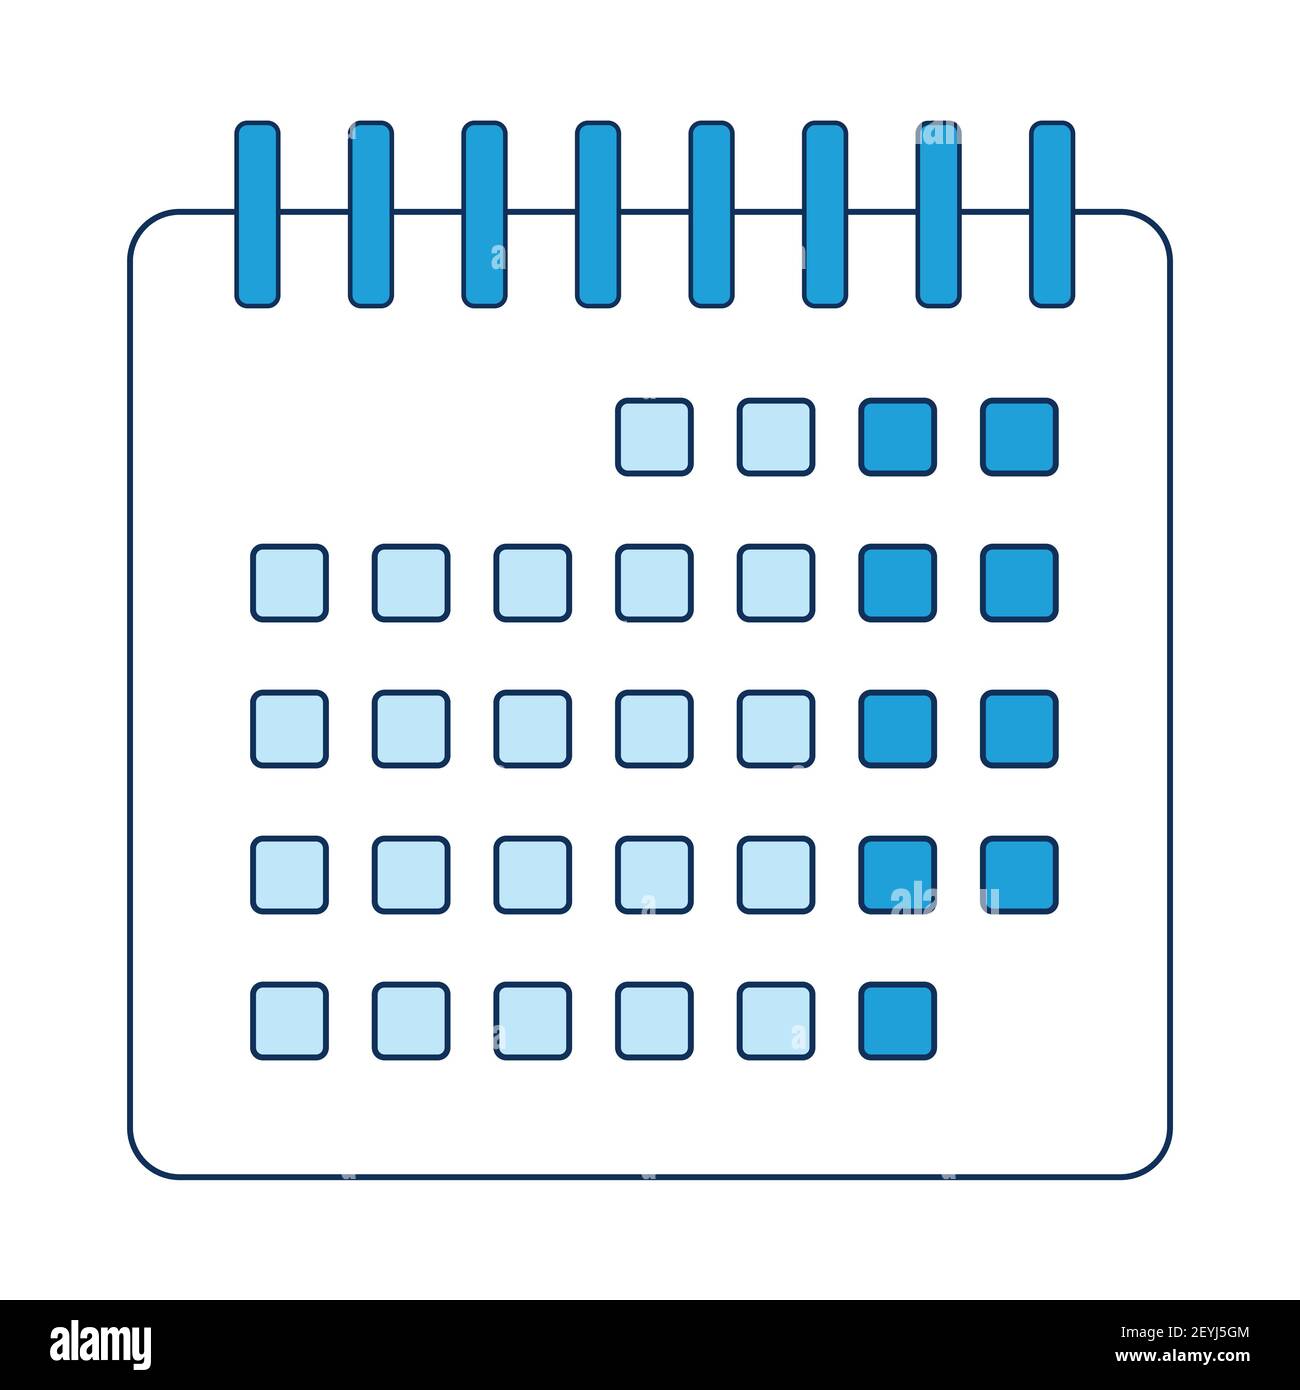 Calendrier médical de la vaccination COVID-19. Un modèle d'affiche médicale dans les tons de bleu. Illustration vectorielle isolée sur fond blanc Illustration de Vecteur